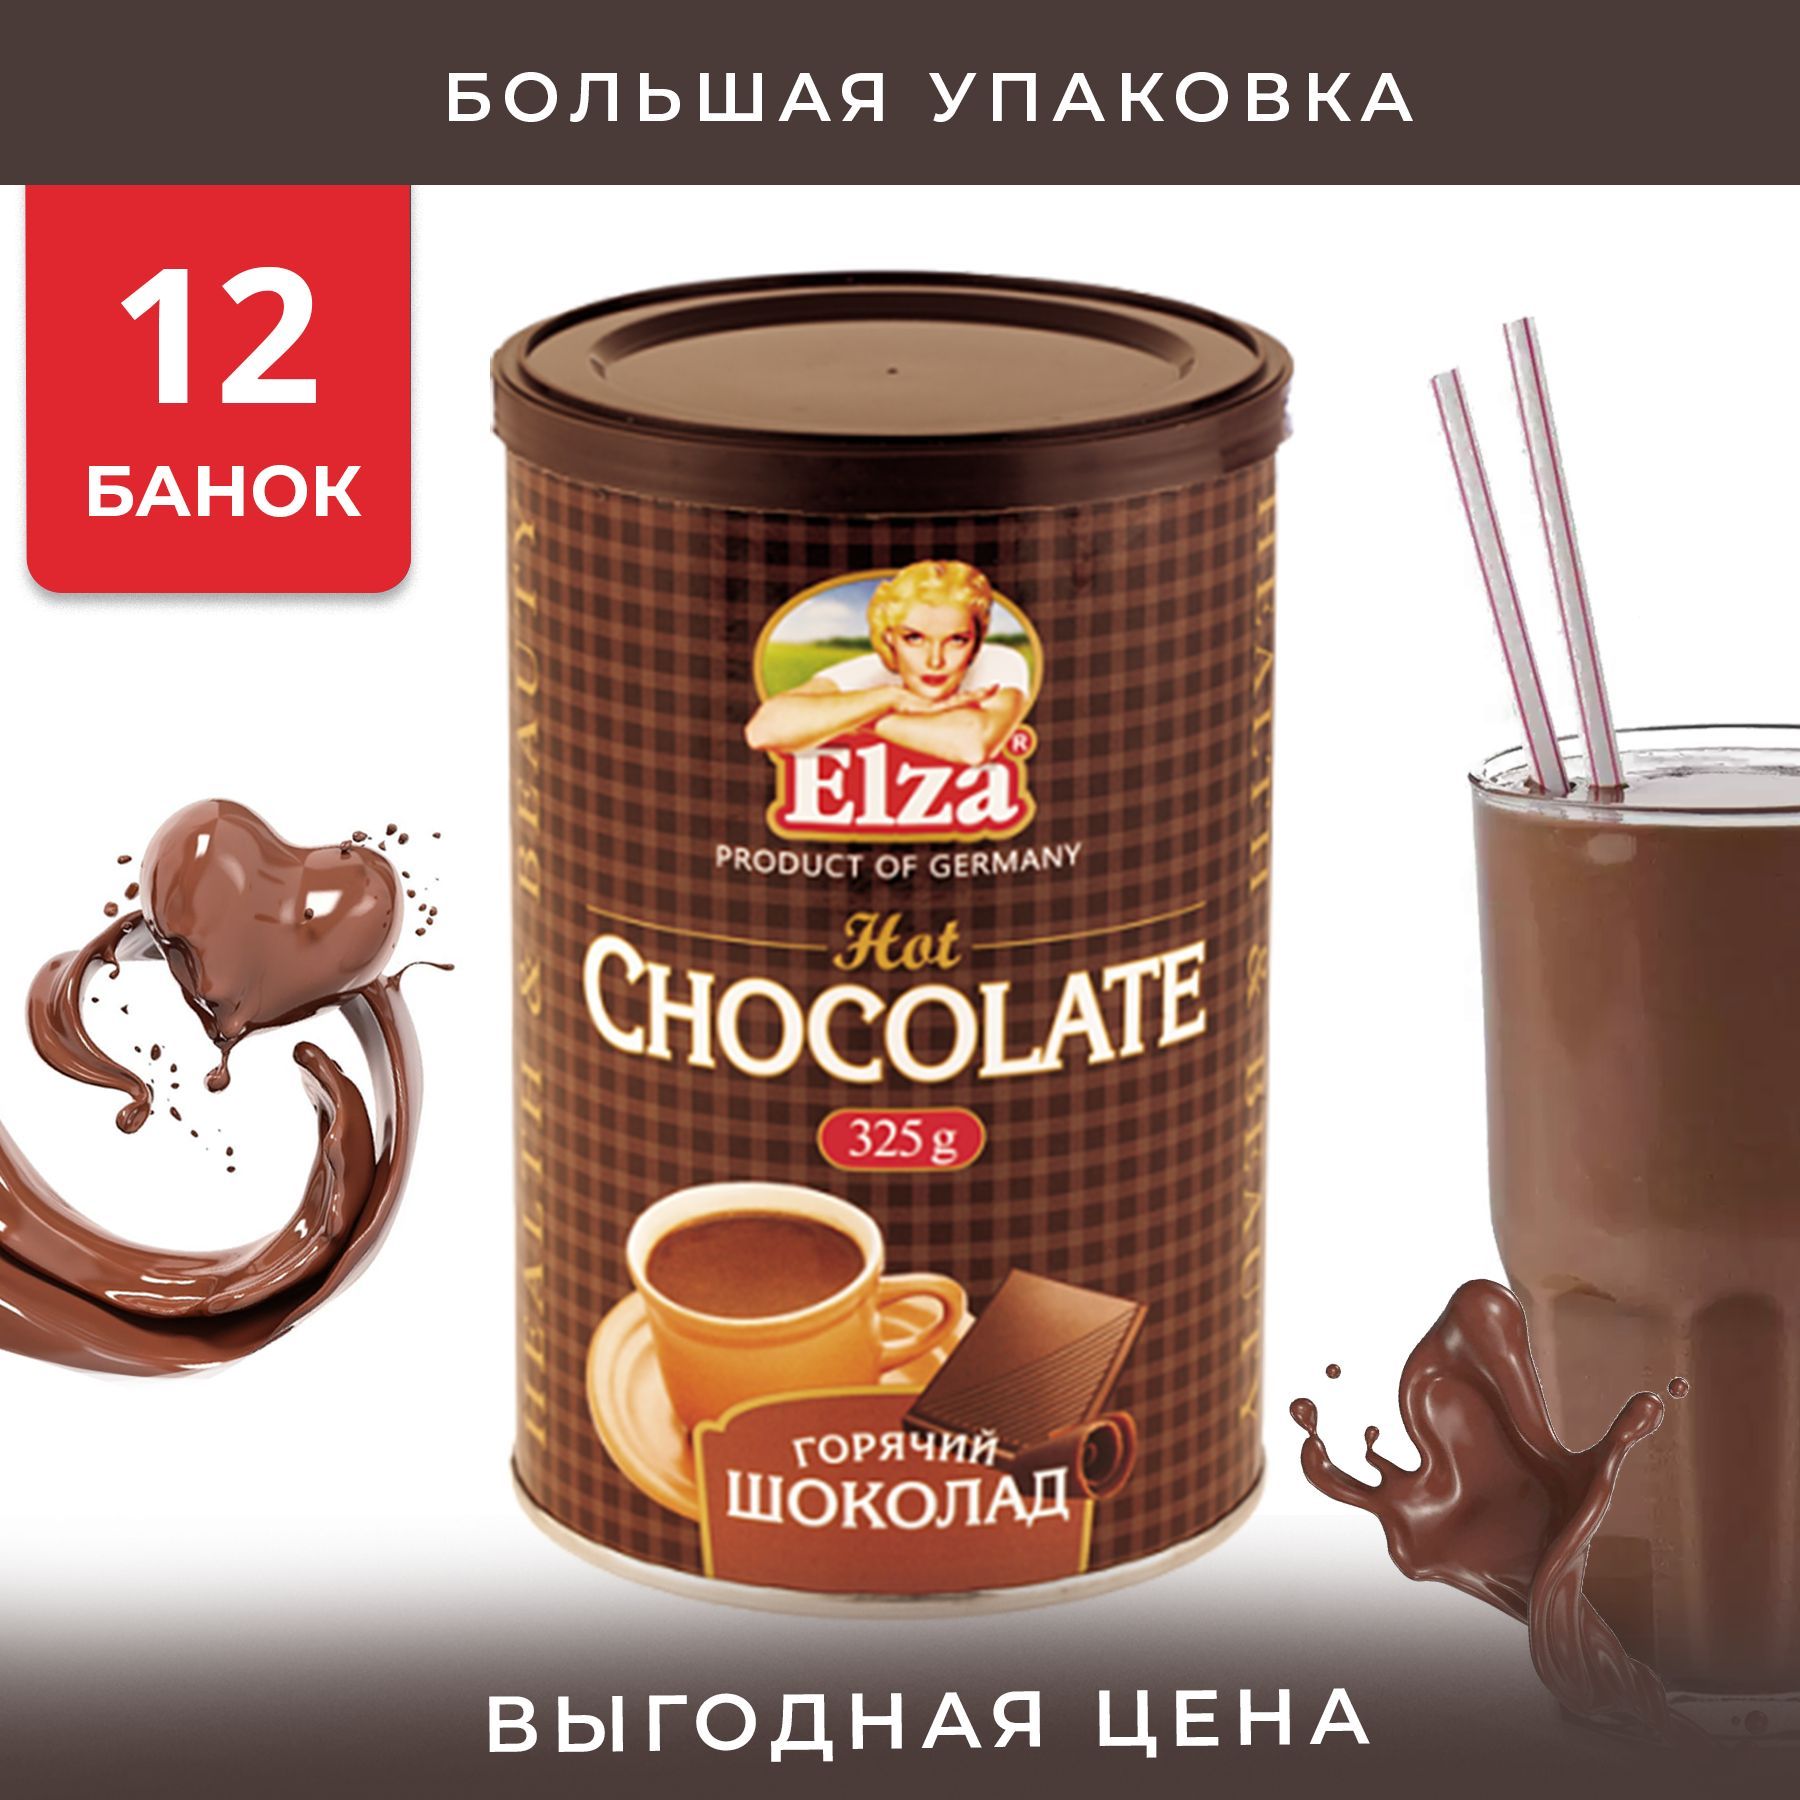 Горький сладкий предложение. Горячий шоколад Elza горячий шоколад растворимый, 325 г, Германия.